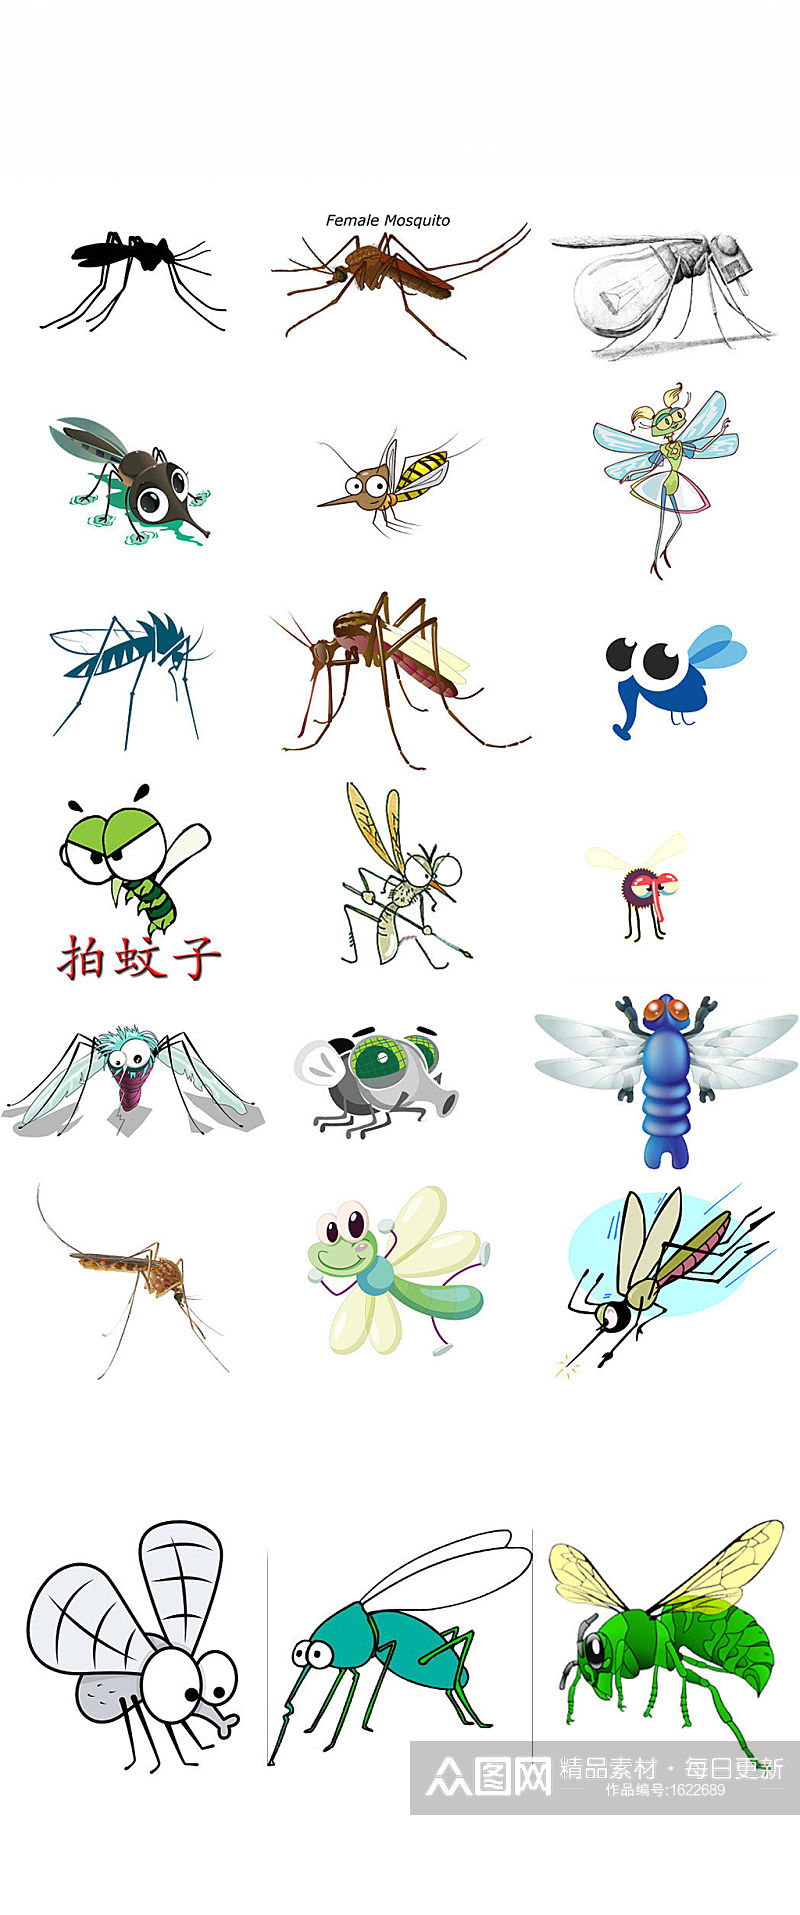 创意可爱卡通蚊子形象设计素材素材